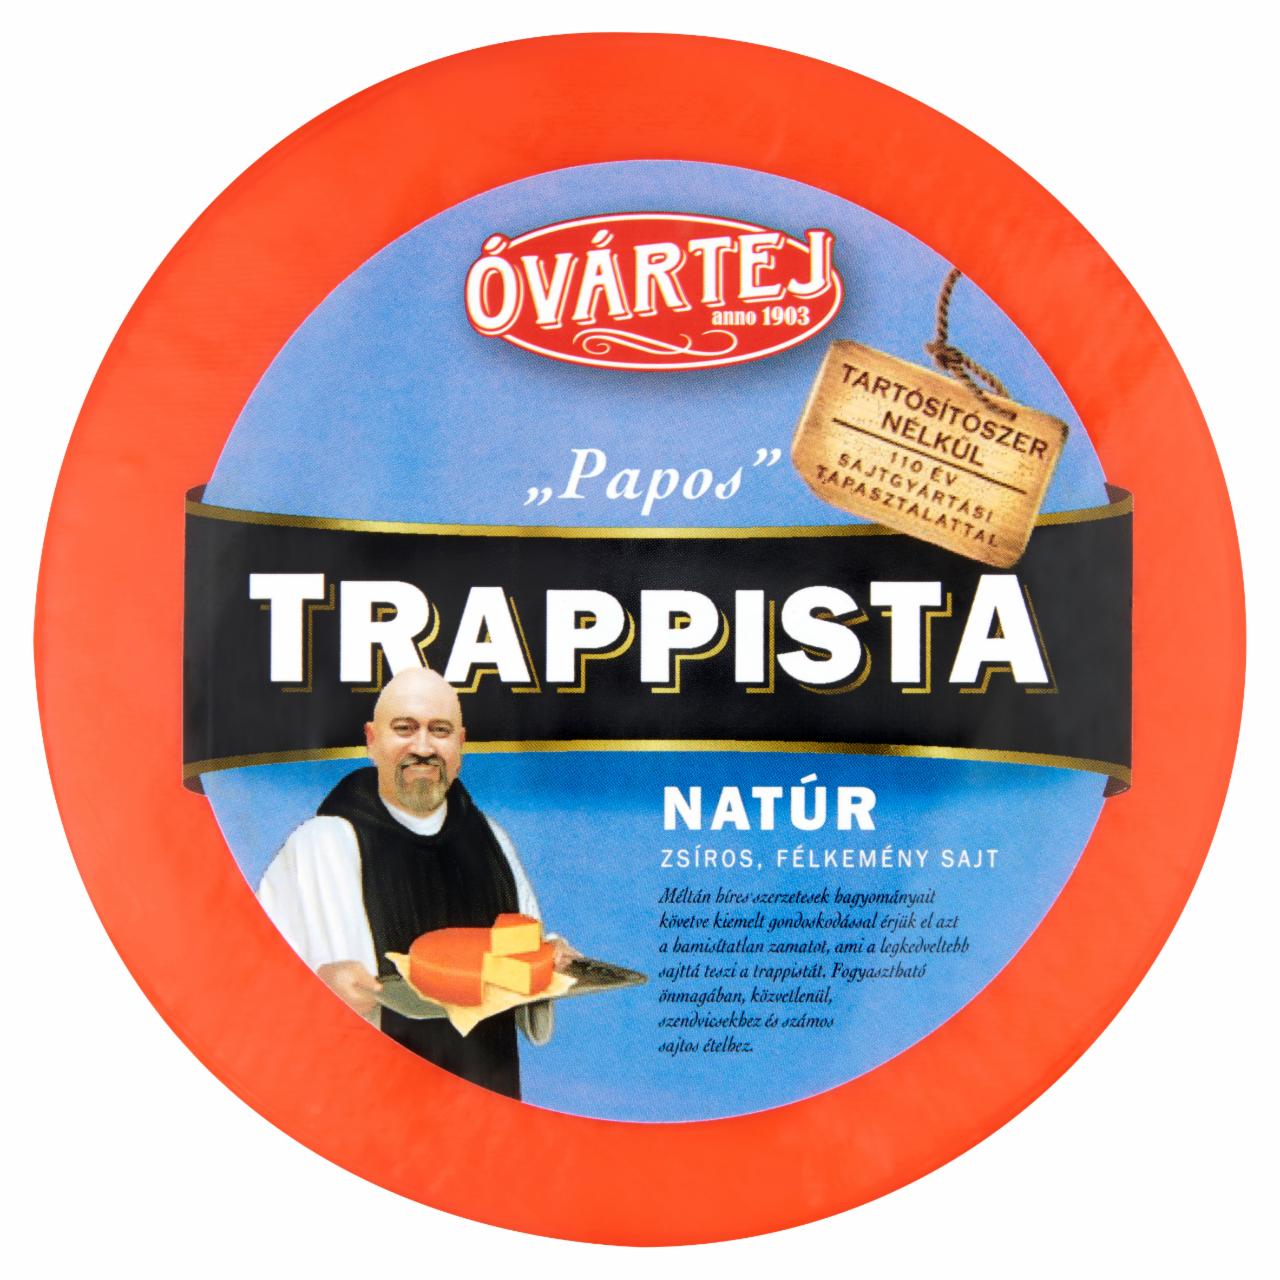 Képek - Óvártej Papos kerek natúr zsíros félkemény trappista sajt